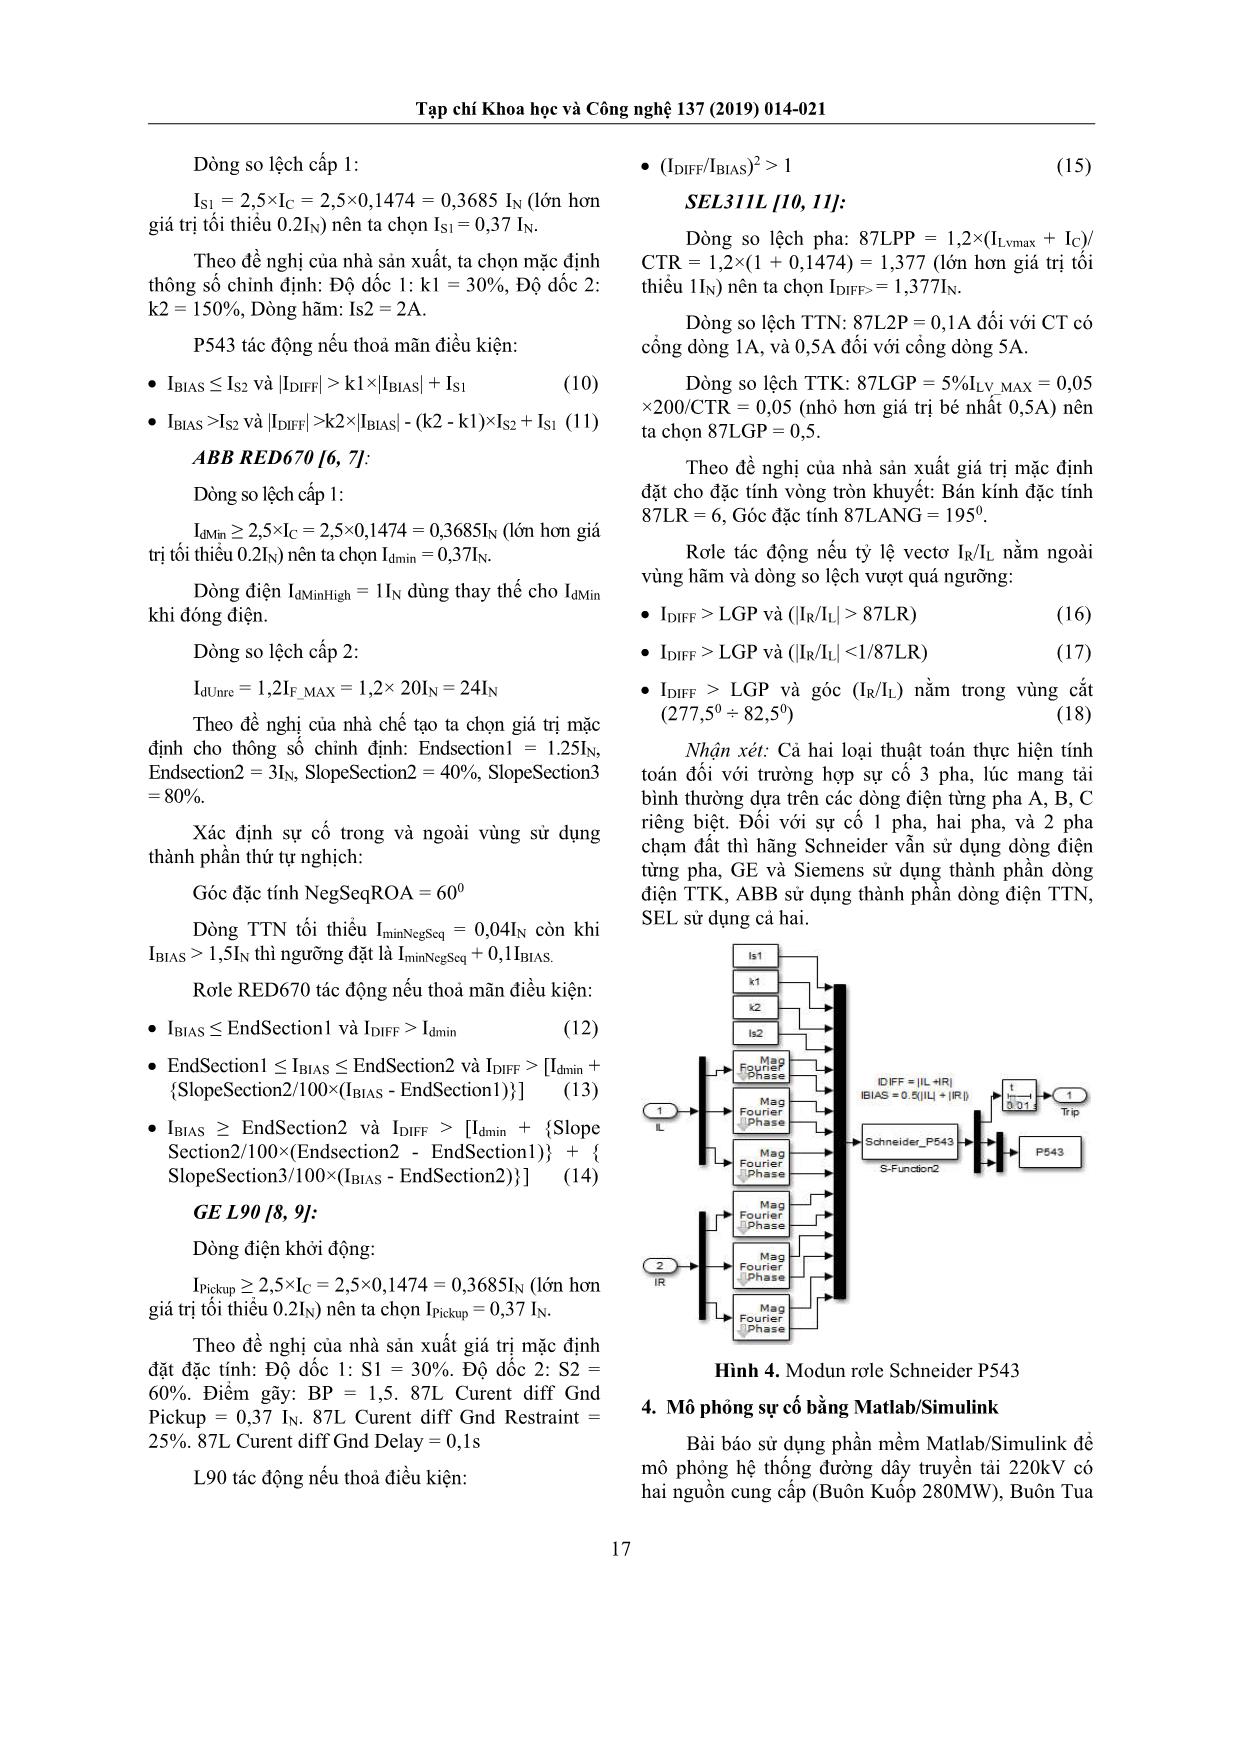 Phân tích và đánh giá đặc tính làm việc bảo vệ so lệch dọc đường dây của rơle kỹ thuật số trang 4